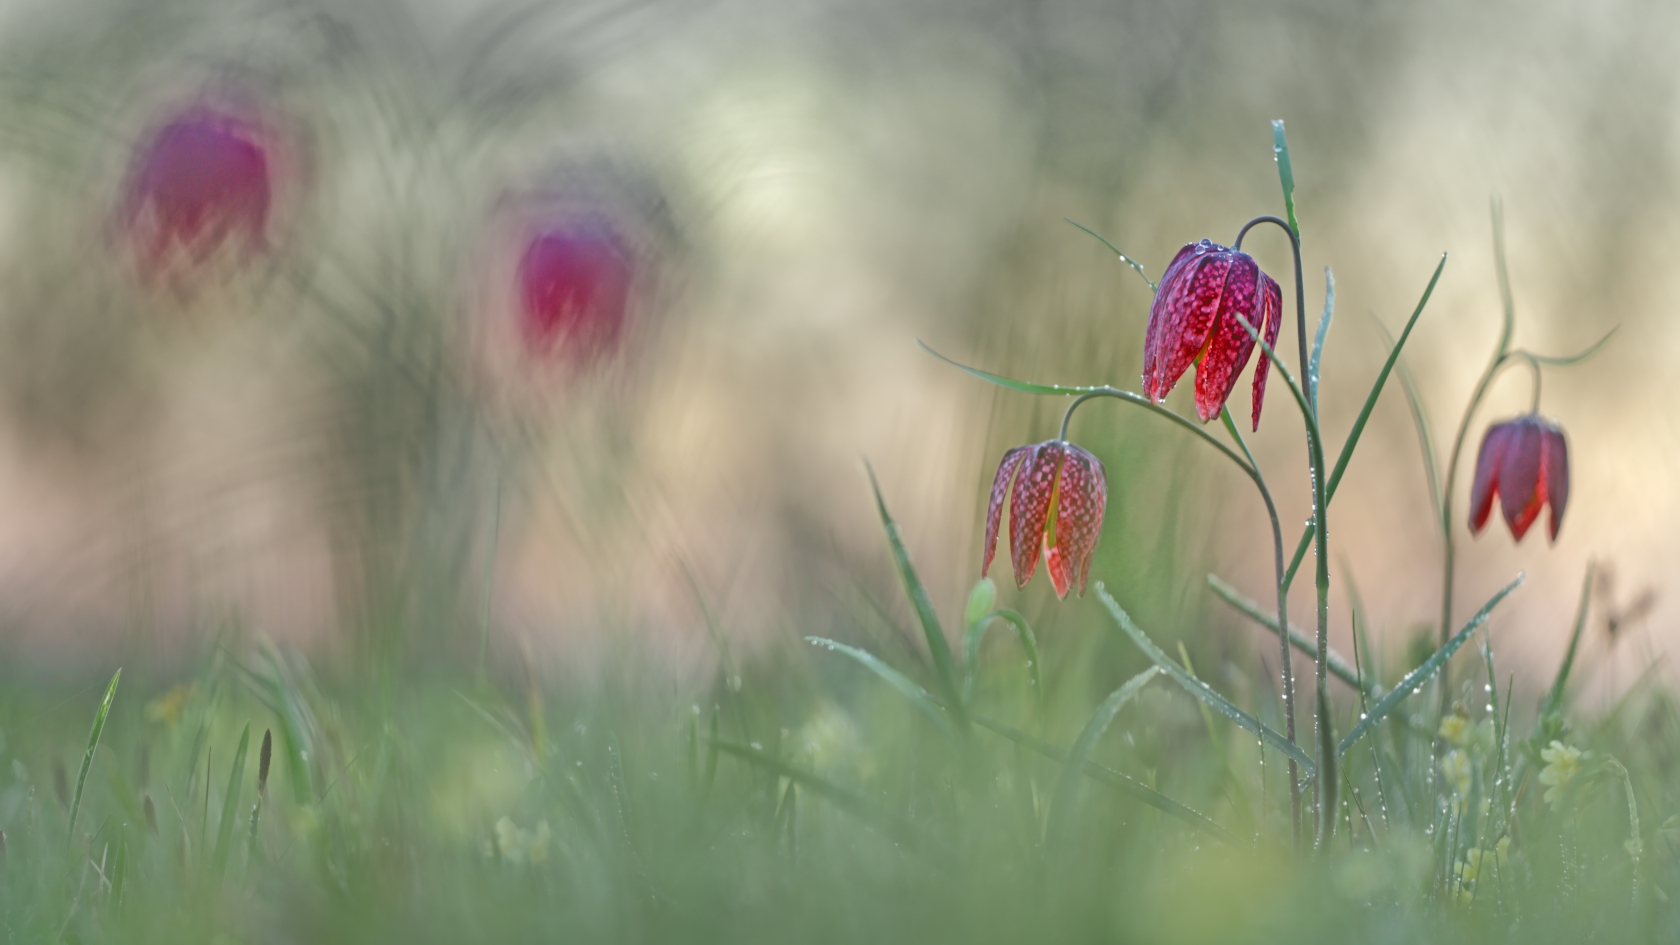 Die Schachblume ist – wie auch mehrere andere besonders schöne Pflanzen mit Gartentradition – nach der Bundesartenschutzverordnung „besonders geschützt“. Foto: Heinz Buls